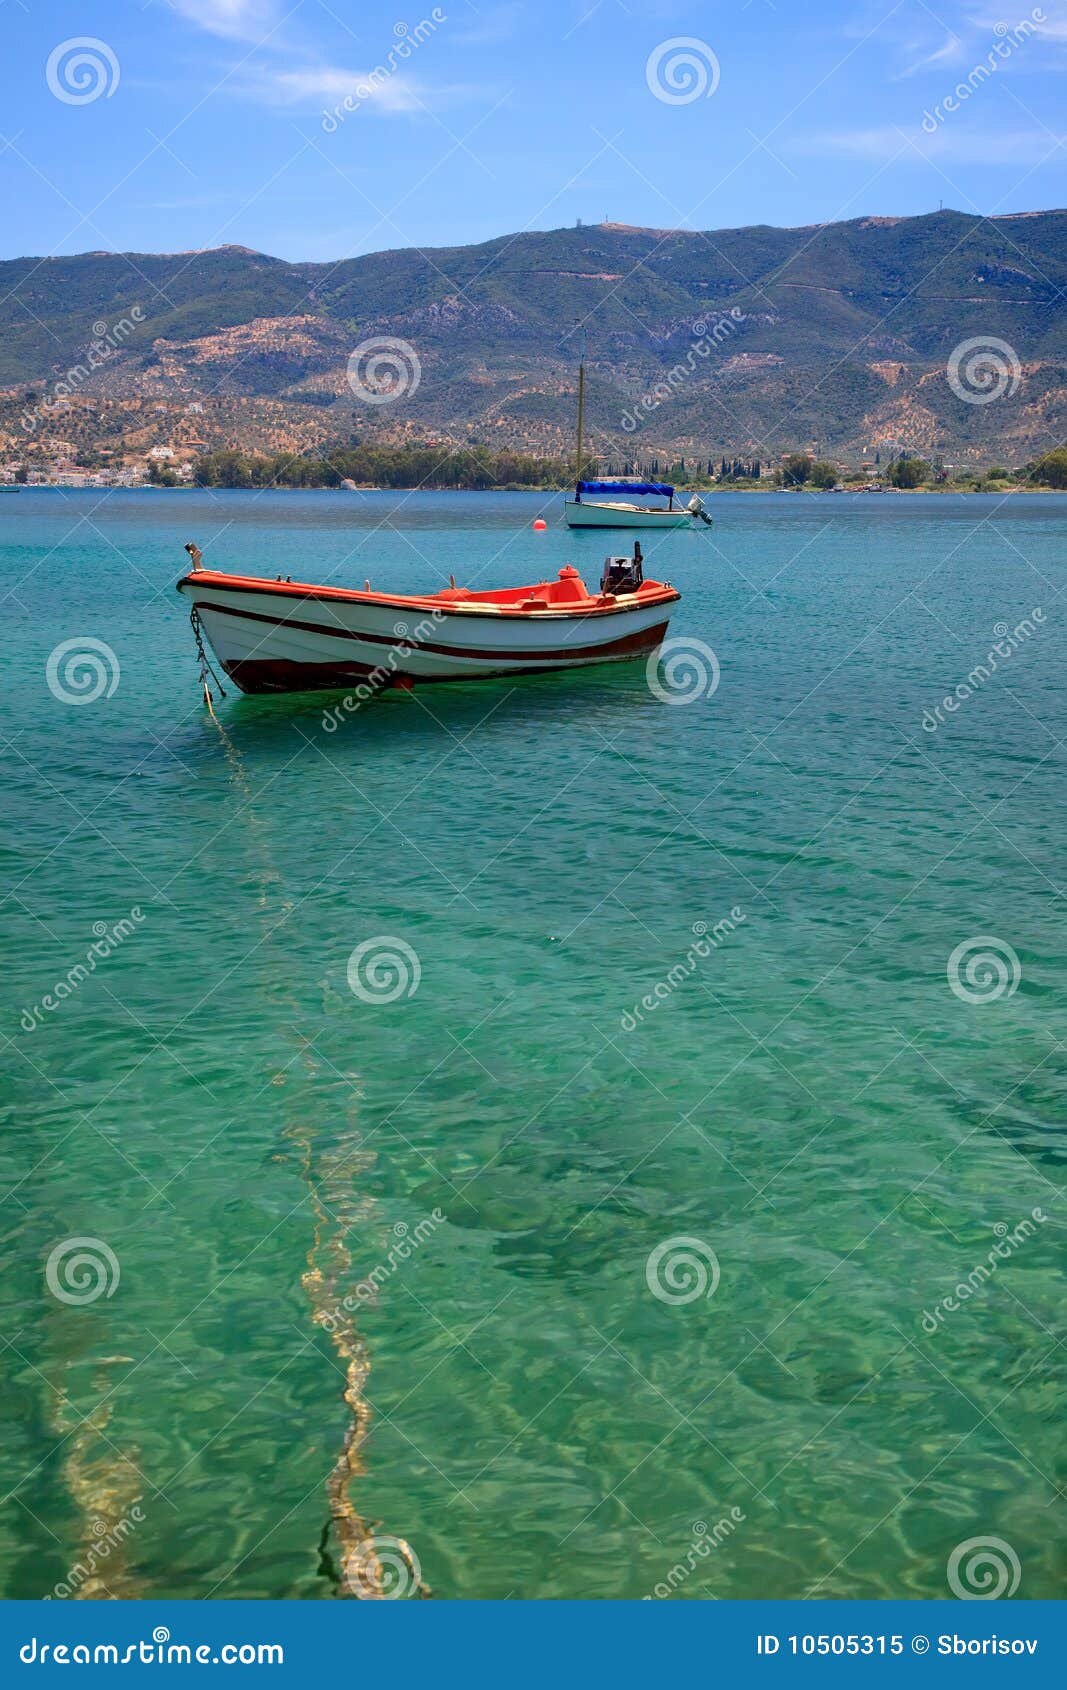 Fishing boat in the Aegean sea